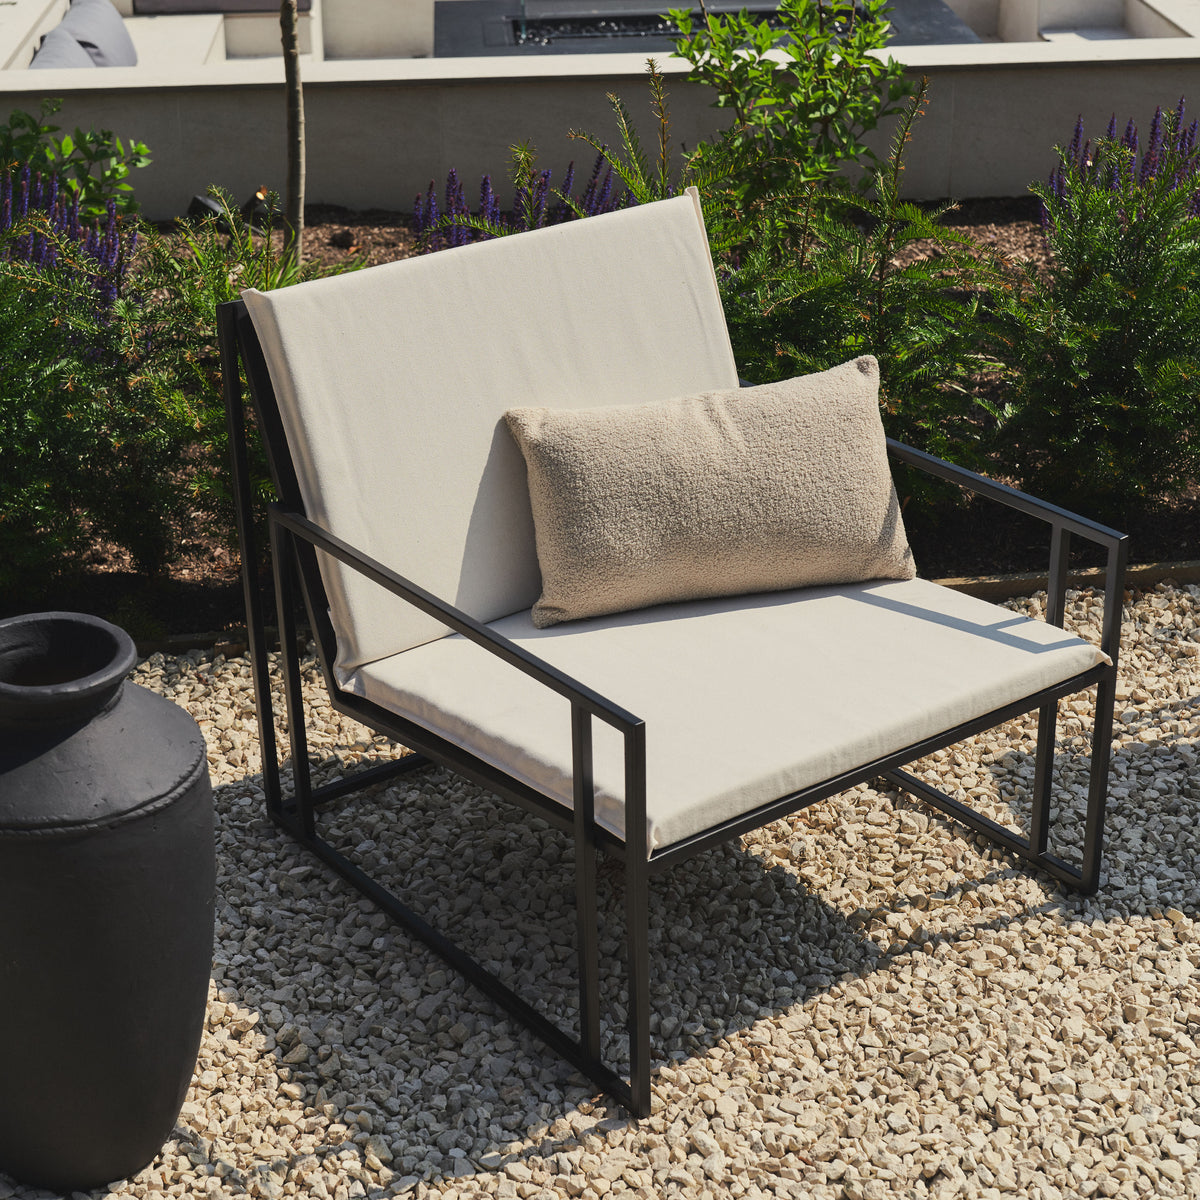 Rectangular Sand Modern Garden Chair beside vase